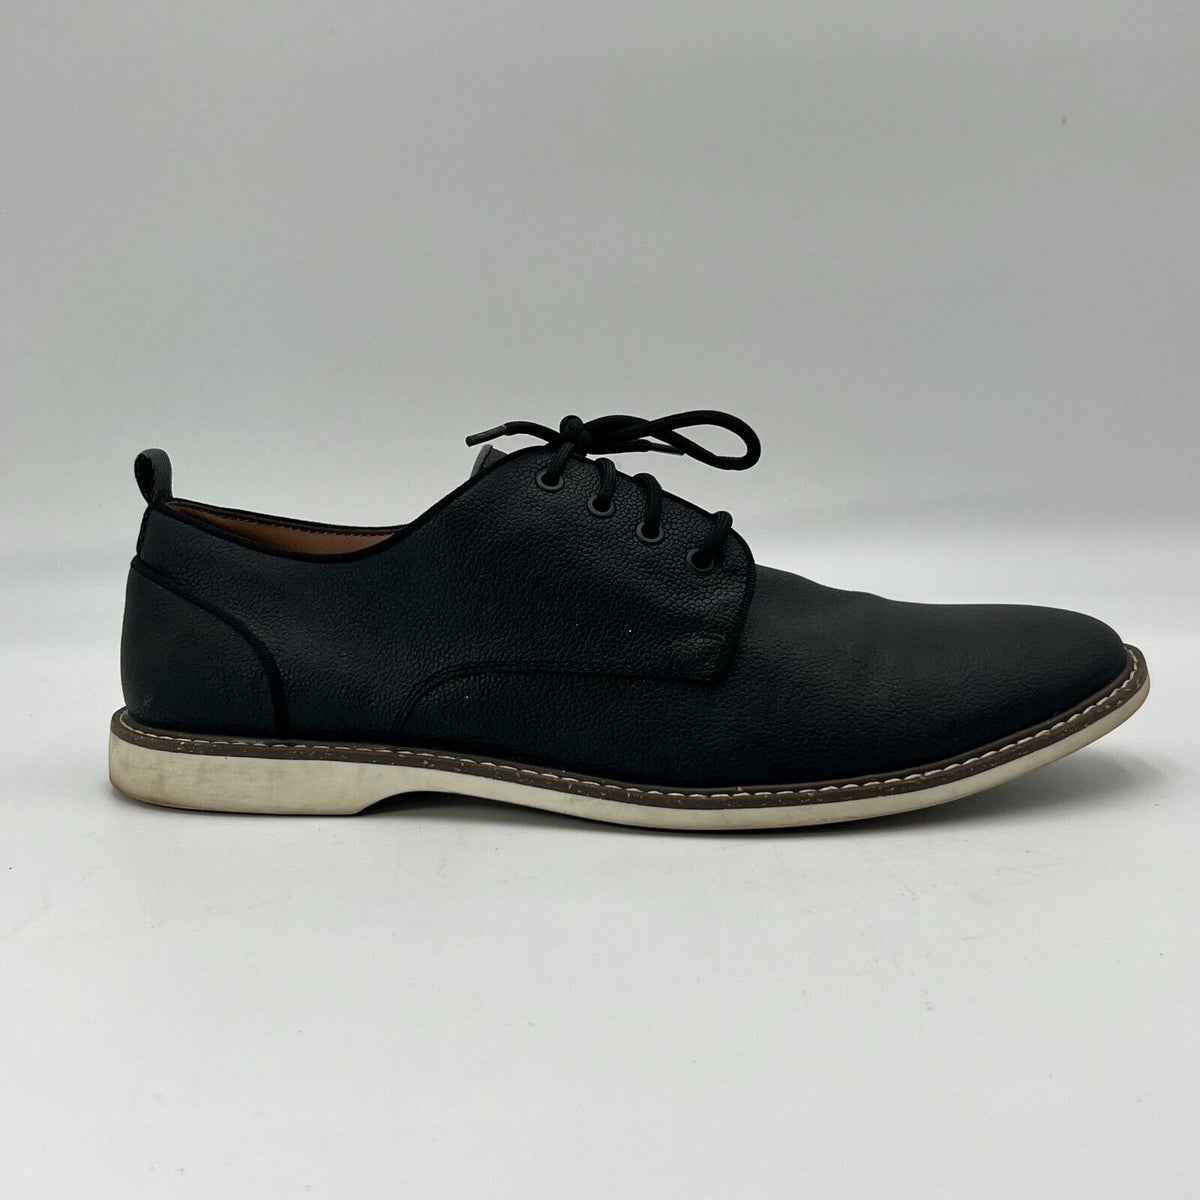 Parker & Sky Men’s Dress Black @ Brown Shoes Lace Up Oxfords size 12 New